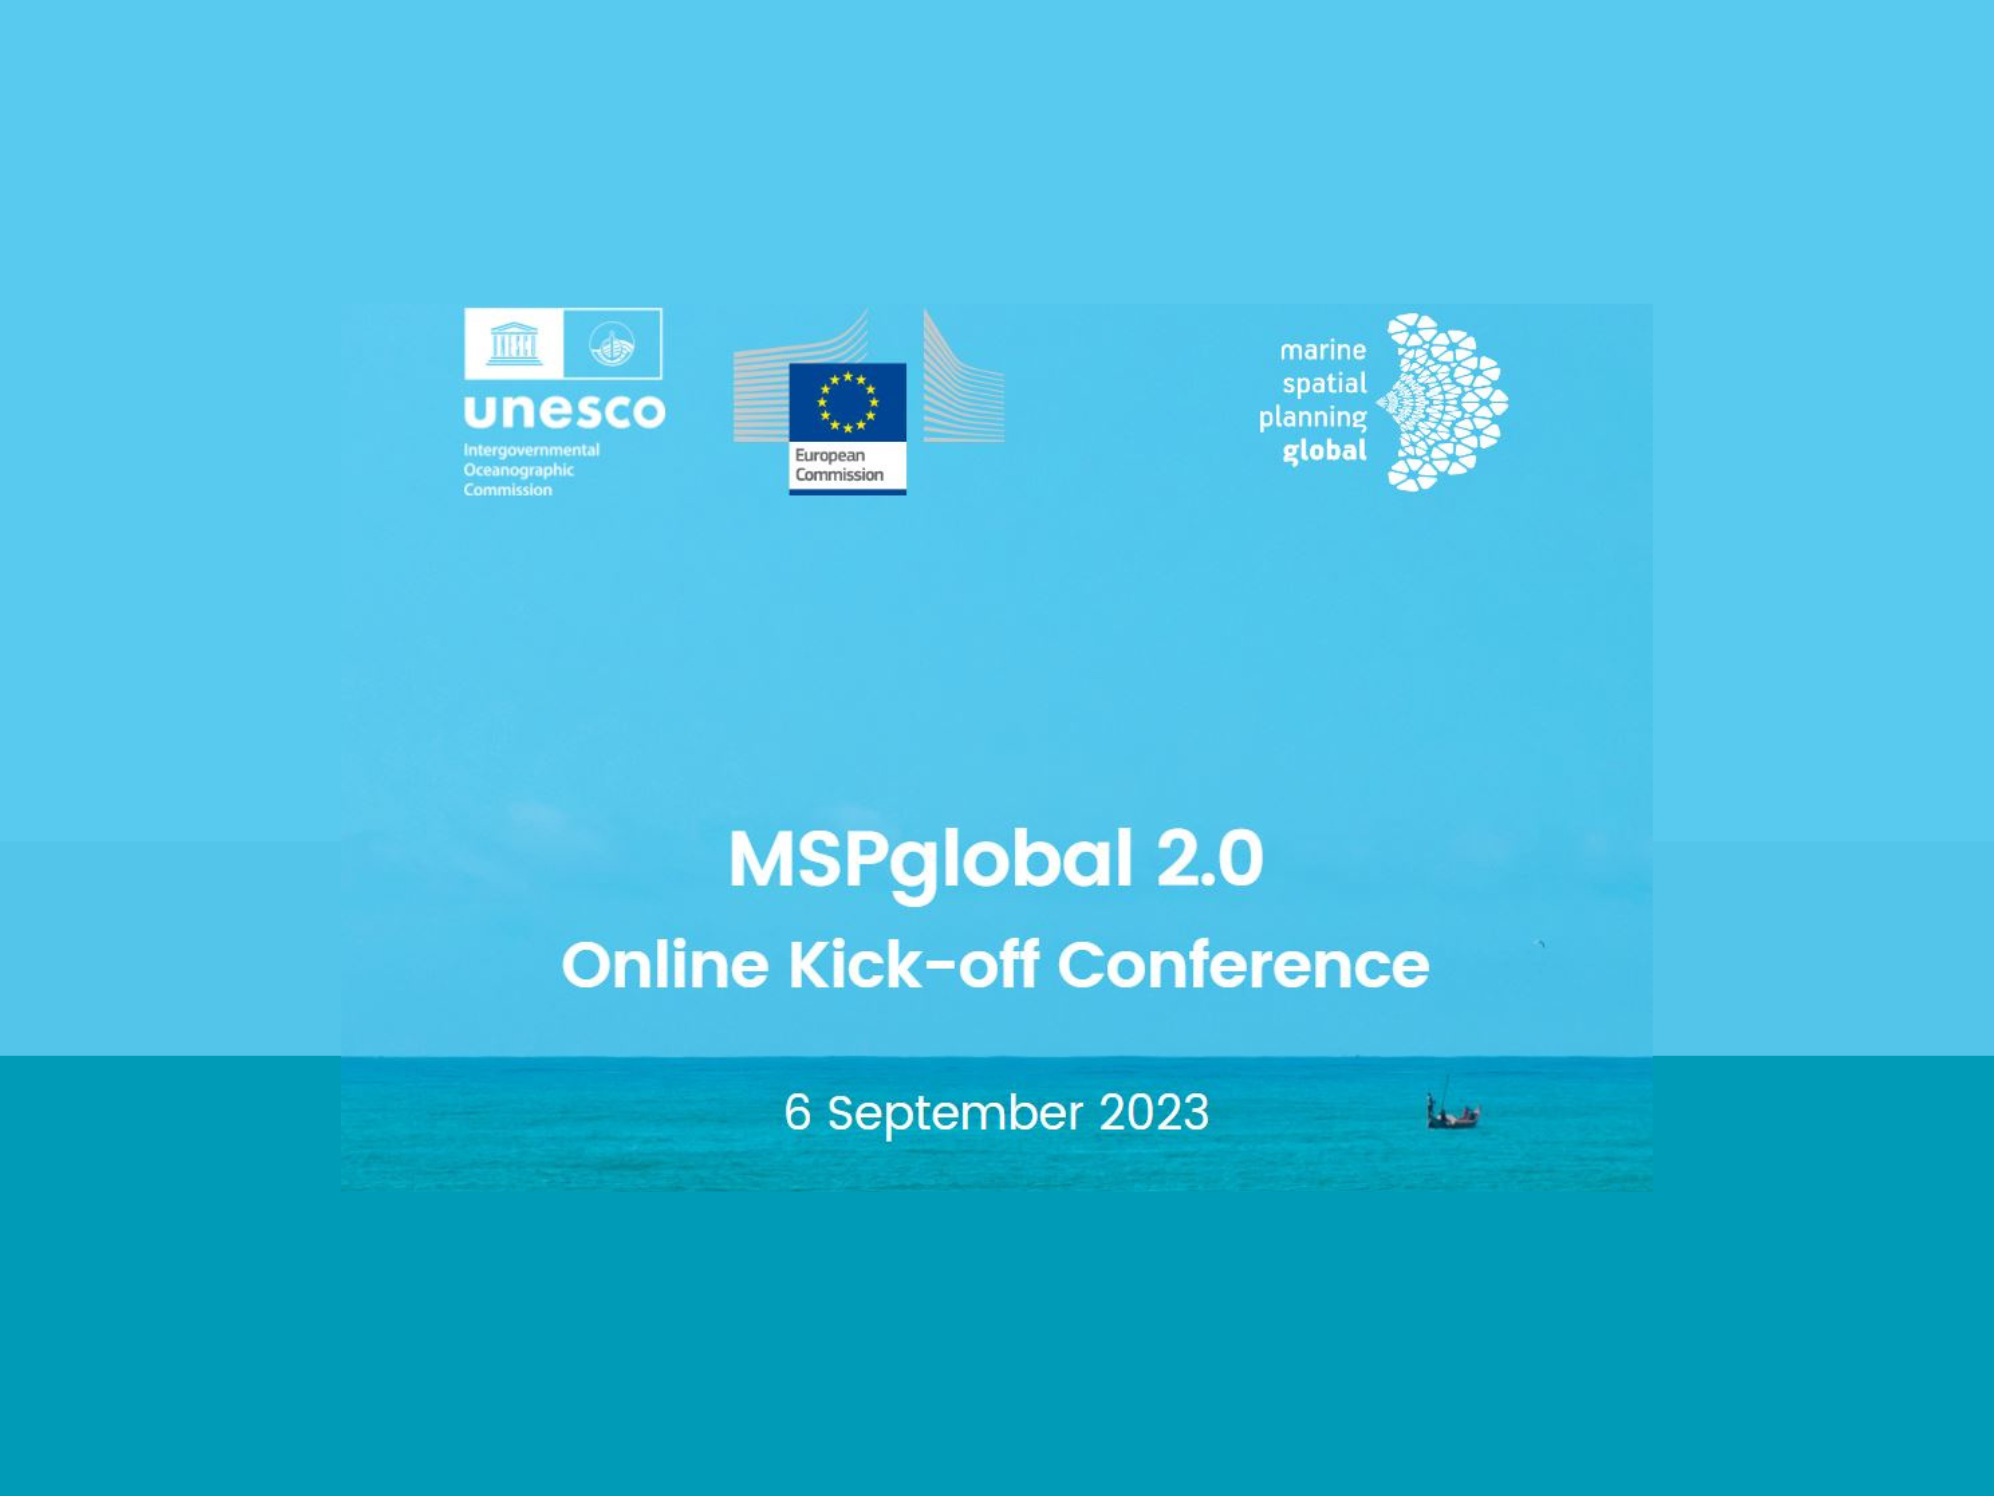 MSPglobal 2.0 Online Kick-off Conference